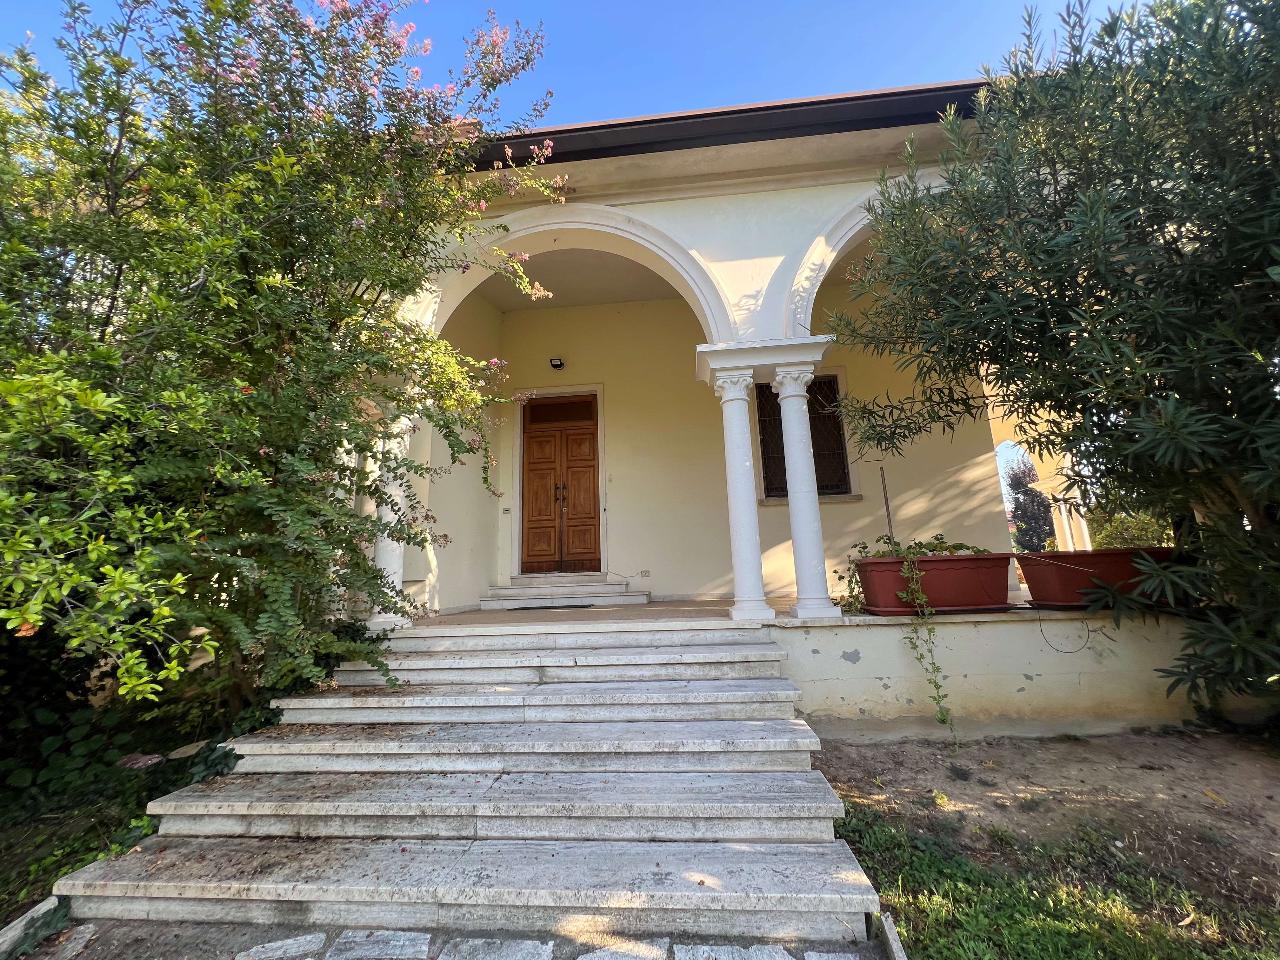 Villa unifamiliare in vendita a Porto Mantovano